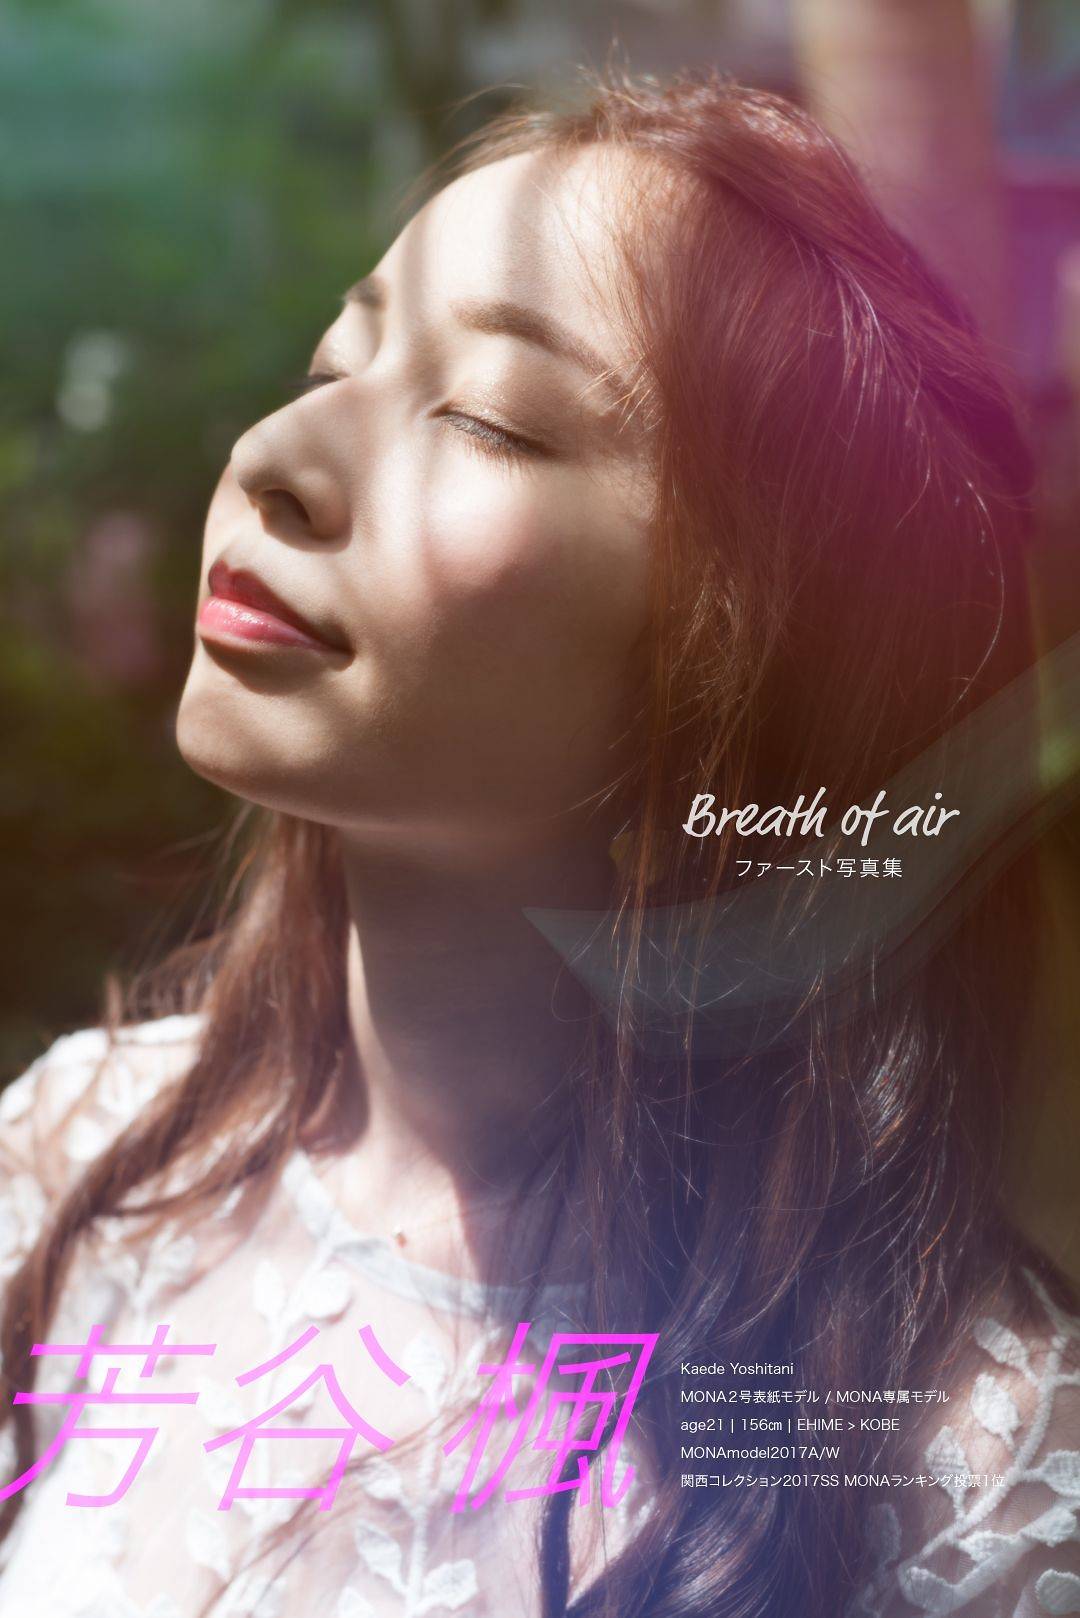 芳谷 楓(芳谷 楓) 写真集 Breath of air | 表紙